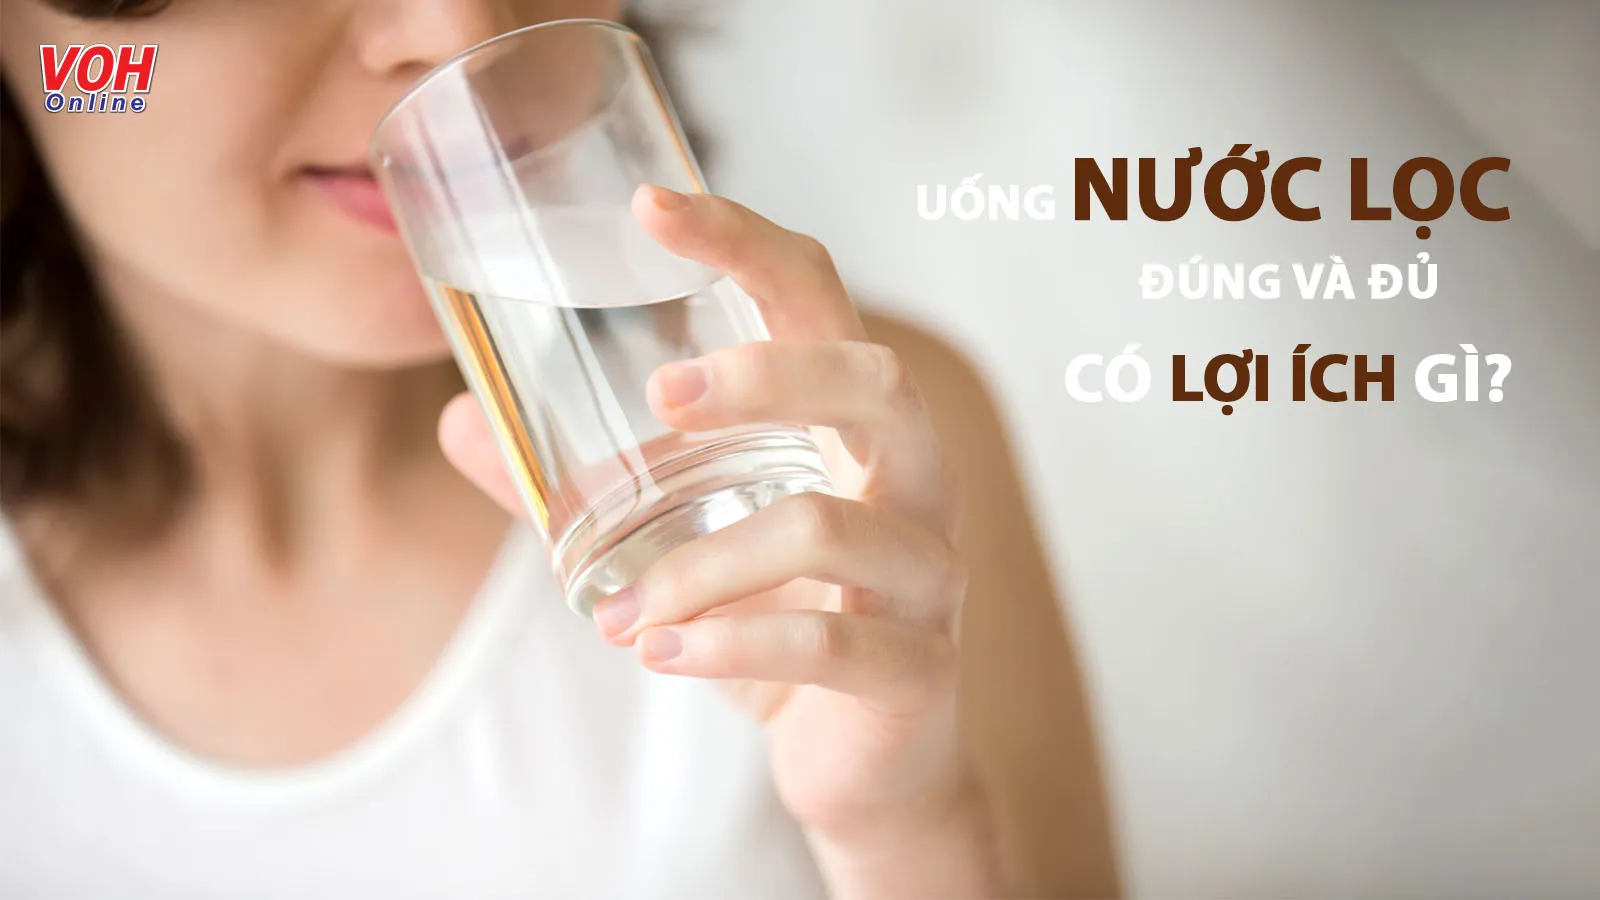 10 lợi ích khi uống nước lọc mà bạn không ngờ tới